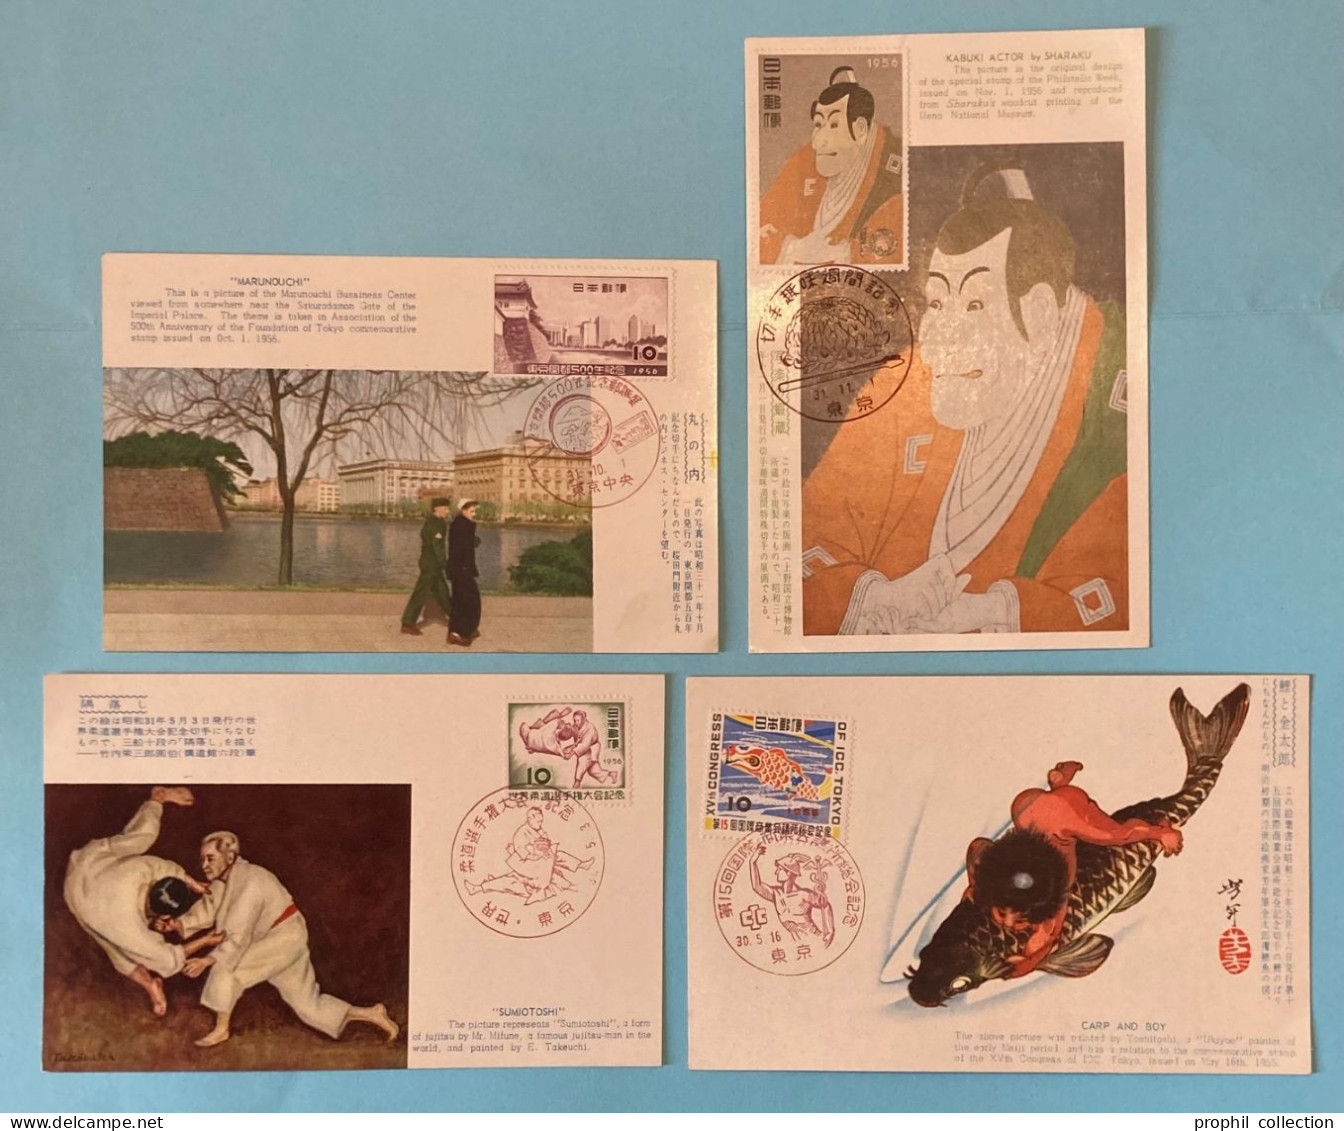 LOT De 4 CARTES MAXIMUM MAX Du JAPON JAPAN JAPONESE CARDS De 1955 1956 - Tarjetas – Máxima